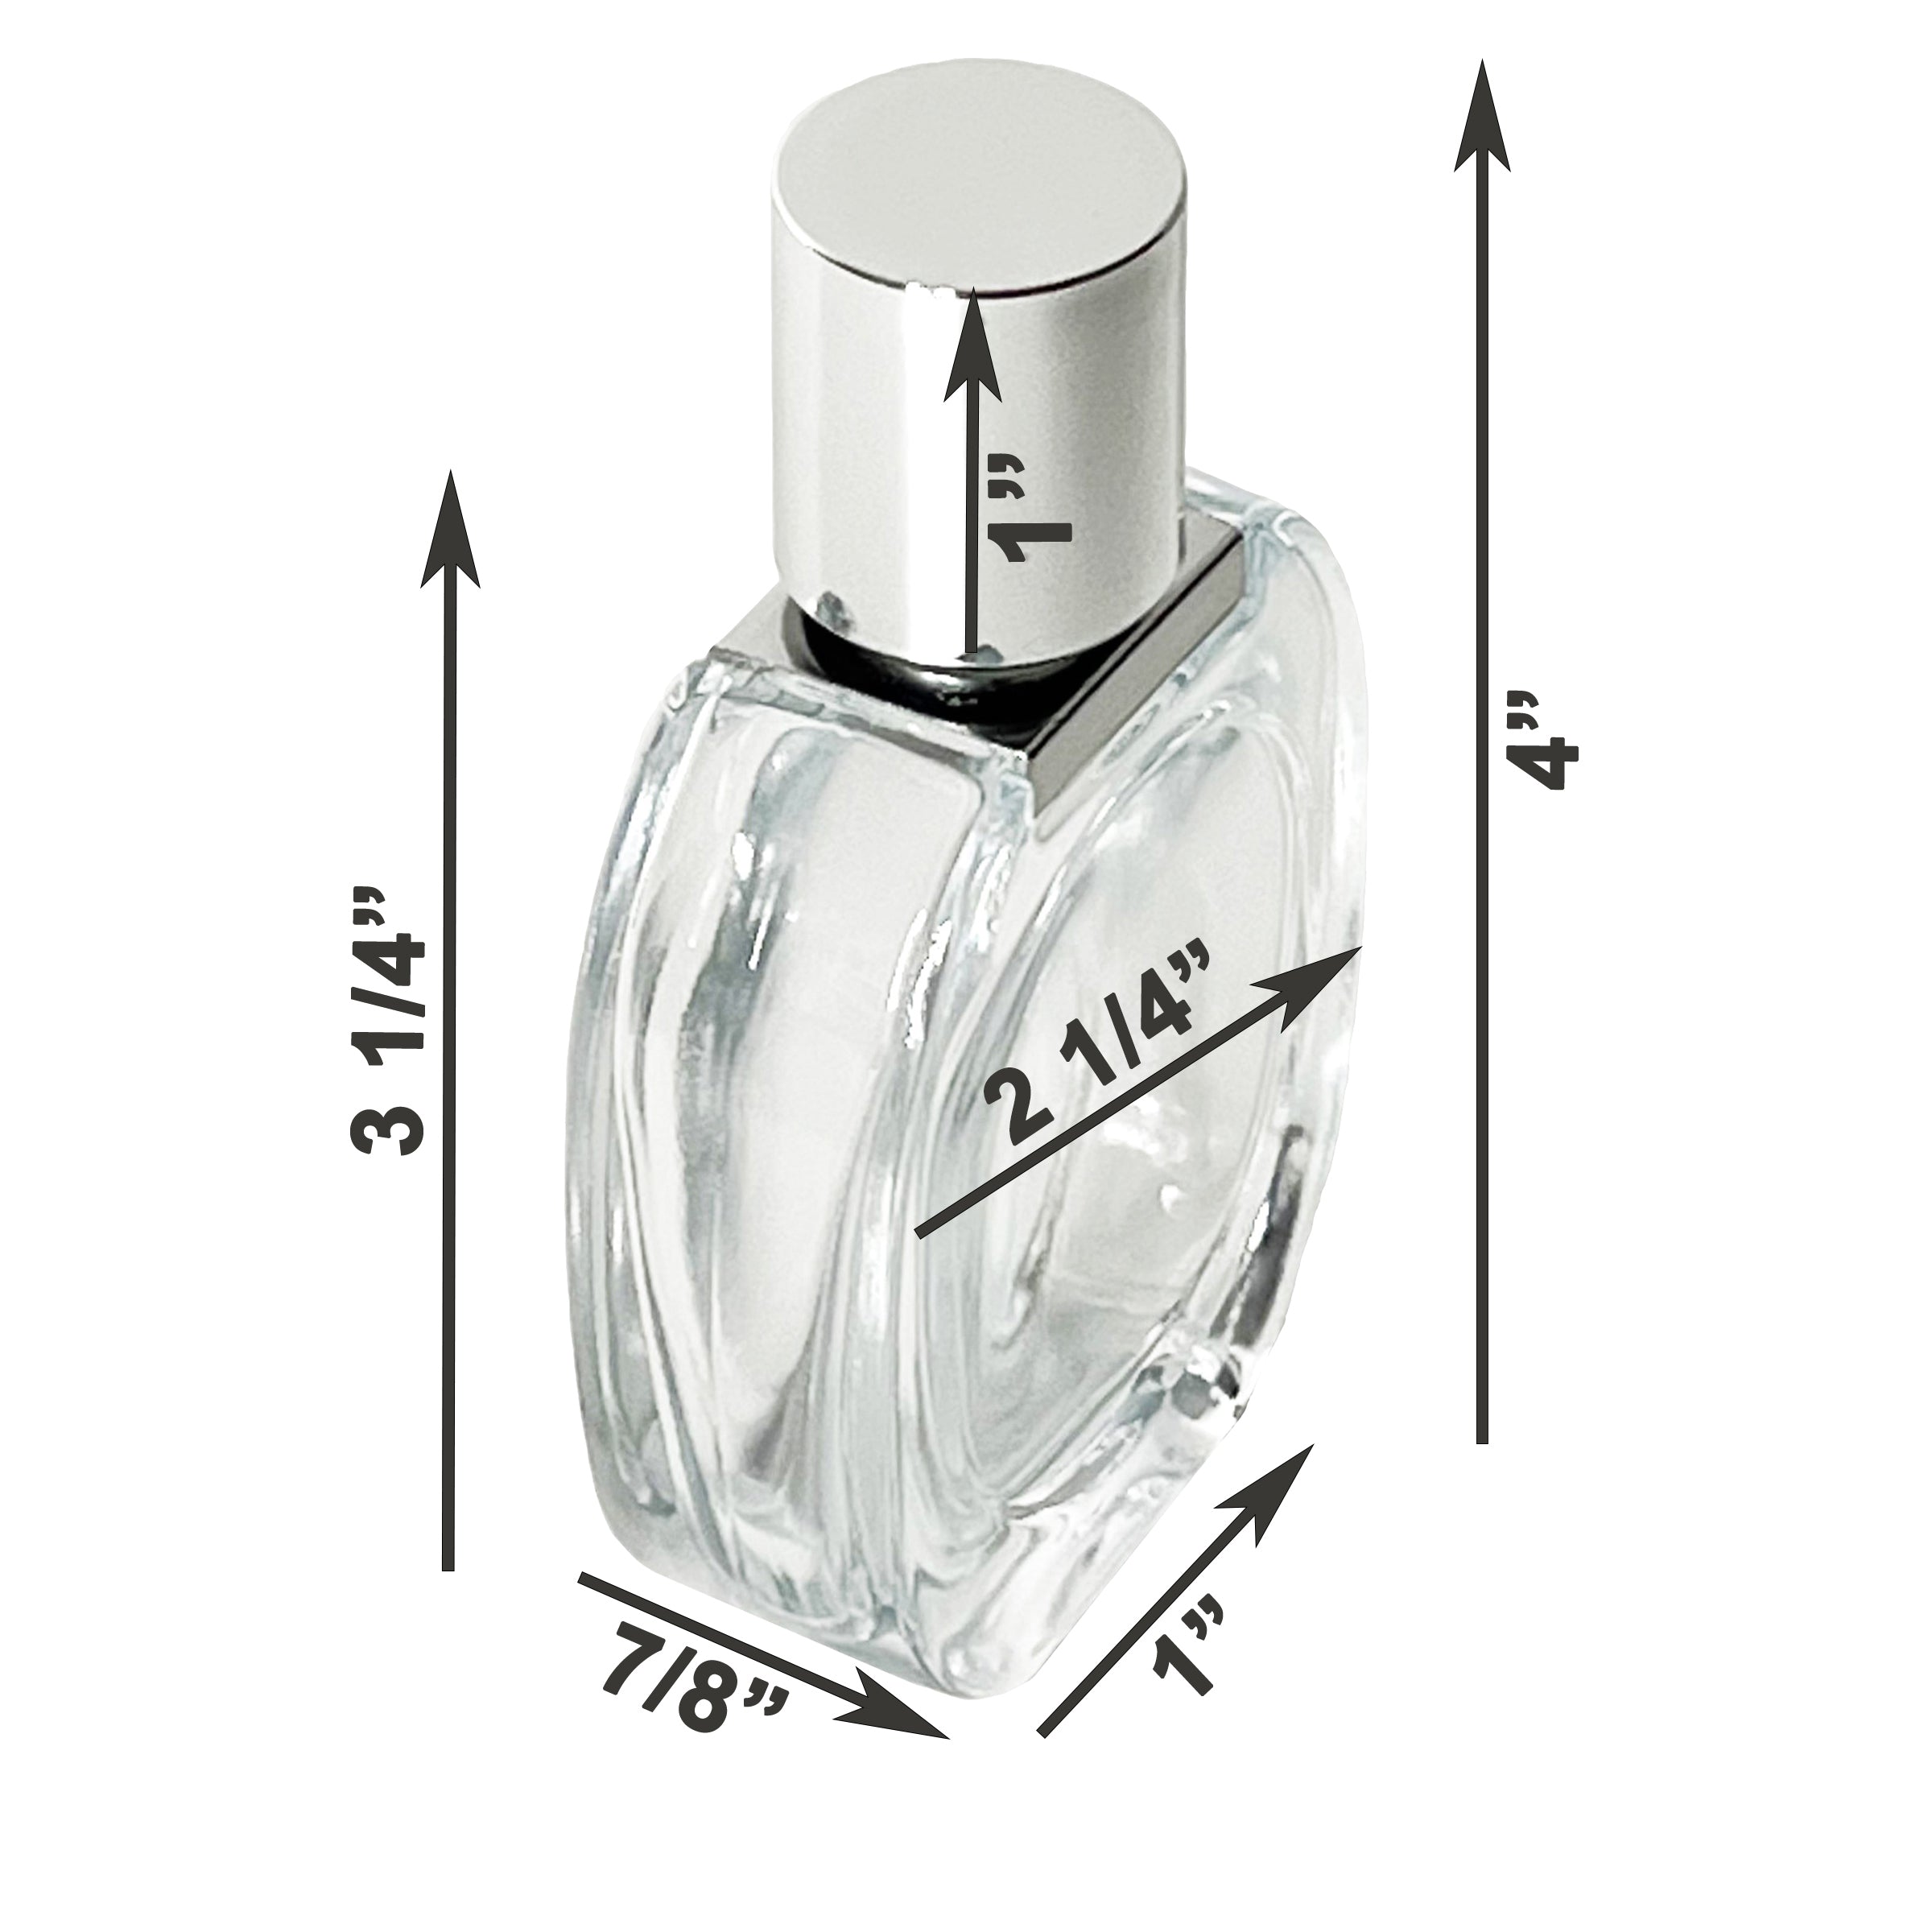 30ml 1oz Glass Perfume Oval Spray Bottles Silver Atomizer